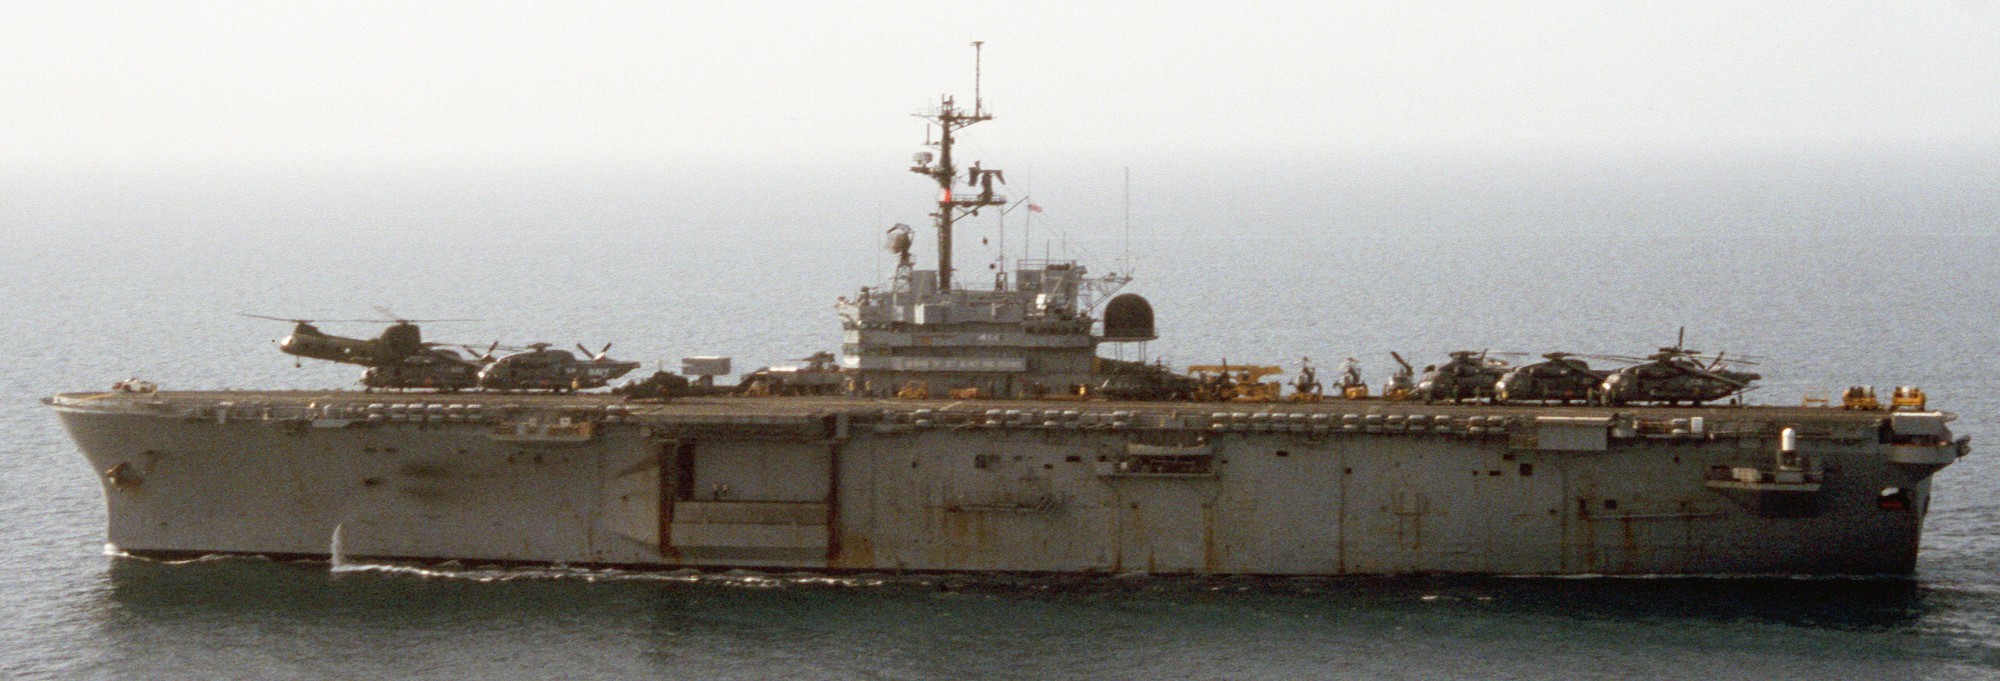 lph-7 uss guadalcanal iwo jima class amphibious assault ship landing platform helicopter us navy 44